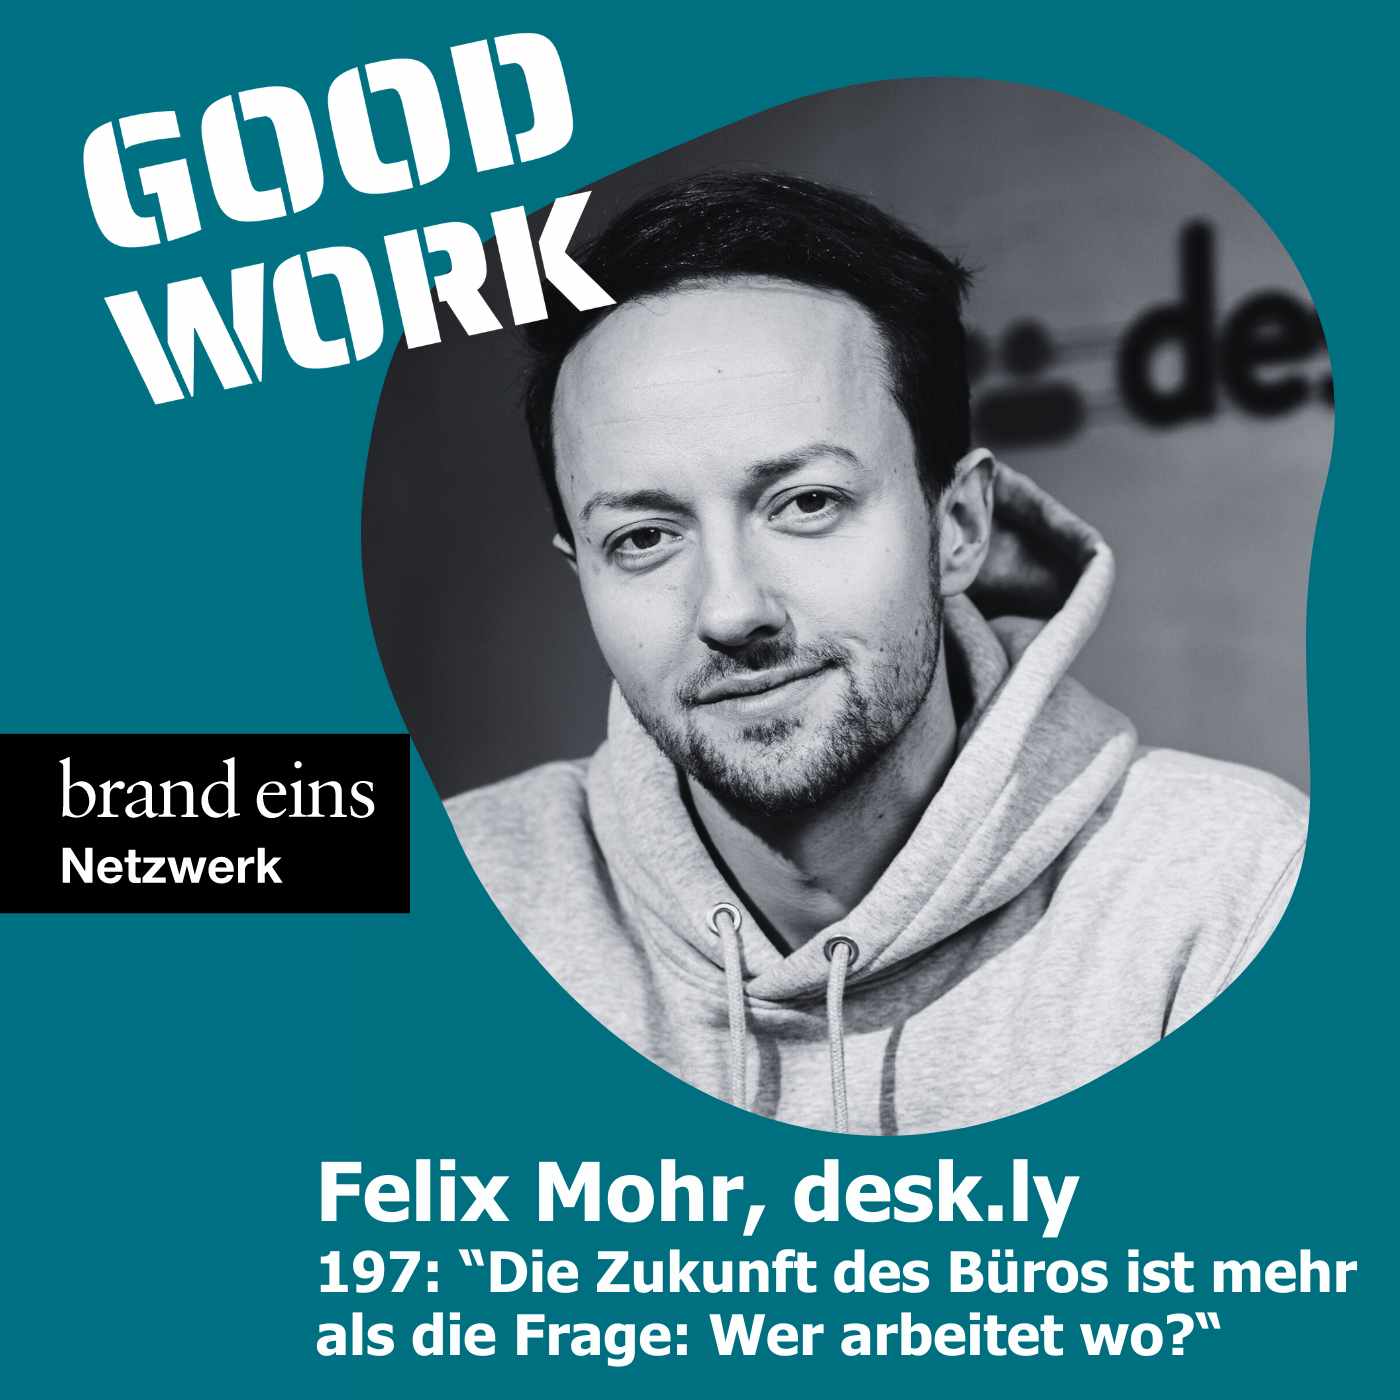 "Die Zukunft des Büros ist mehr als die Frage: Wer arbeitet wo?" mit Felix Mohr, desk.ly